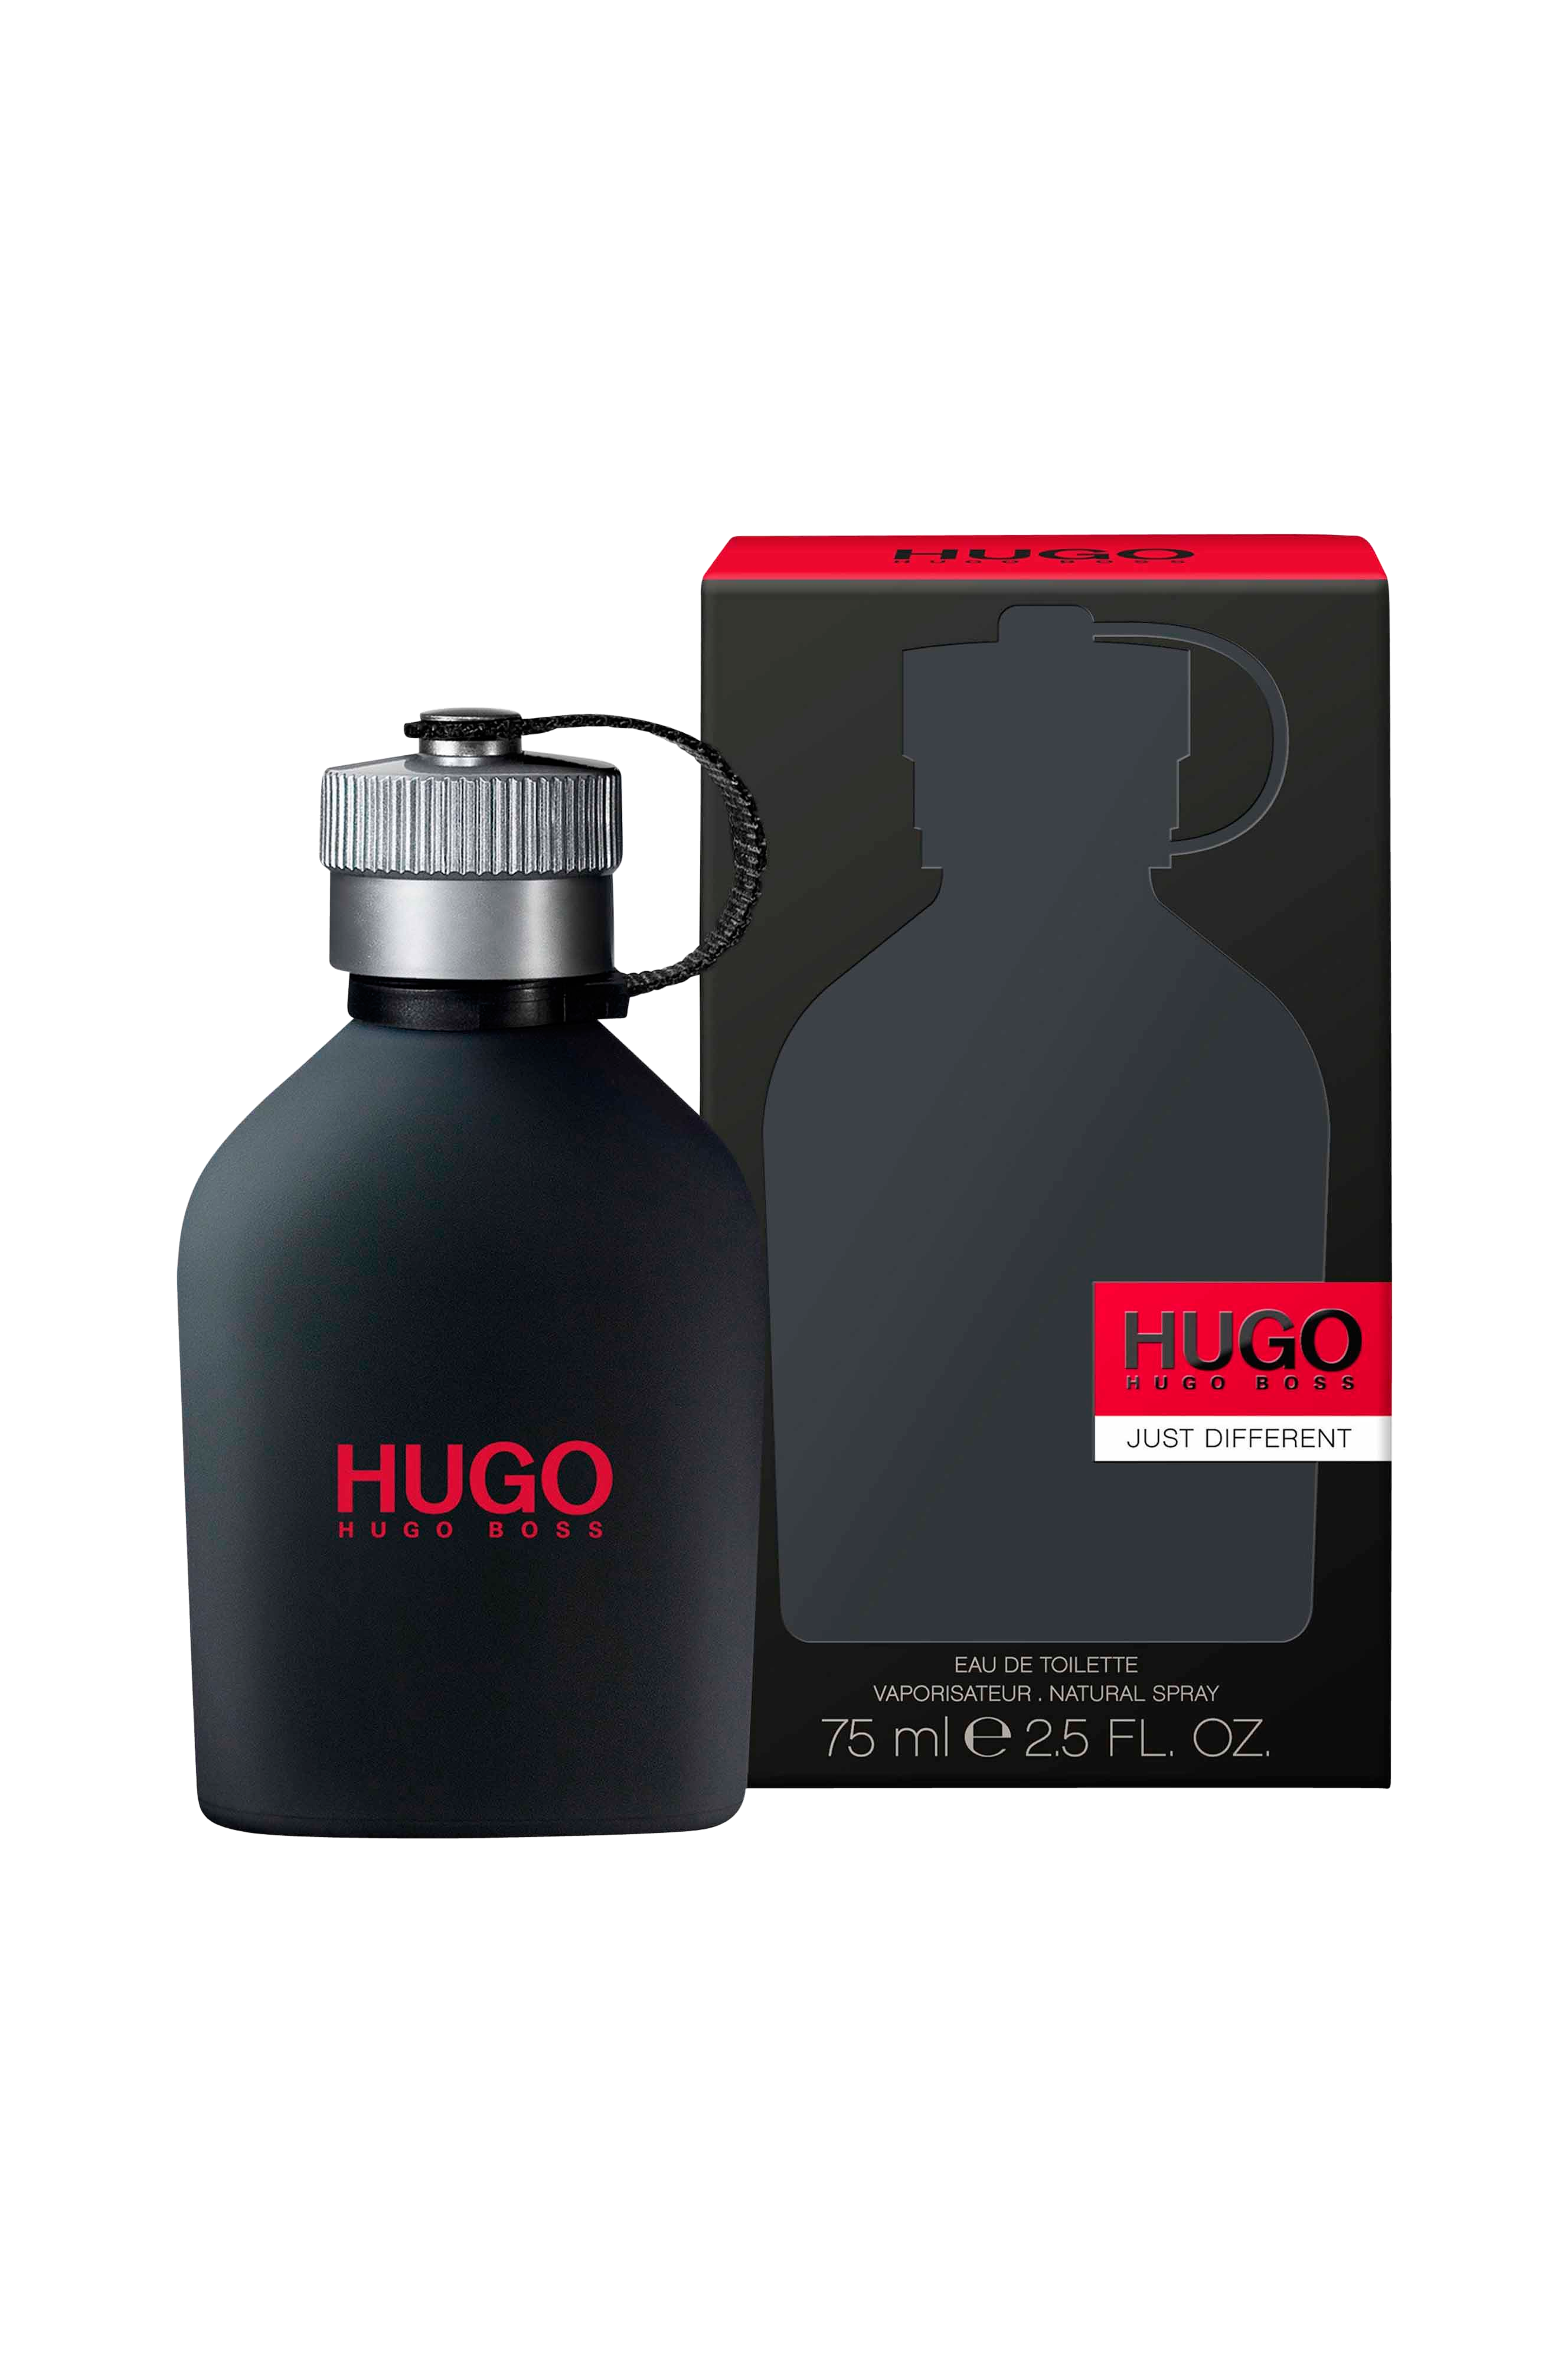 Купить hugo оригинал. Hugo Boss Hugo just different. Hugo Boss just different EDT (M) 75ml. Hugo Boss "Hugo just different" EDT, 100ml. Hugo Boss Hugo just different [m] EDT - 125ml.